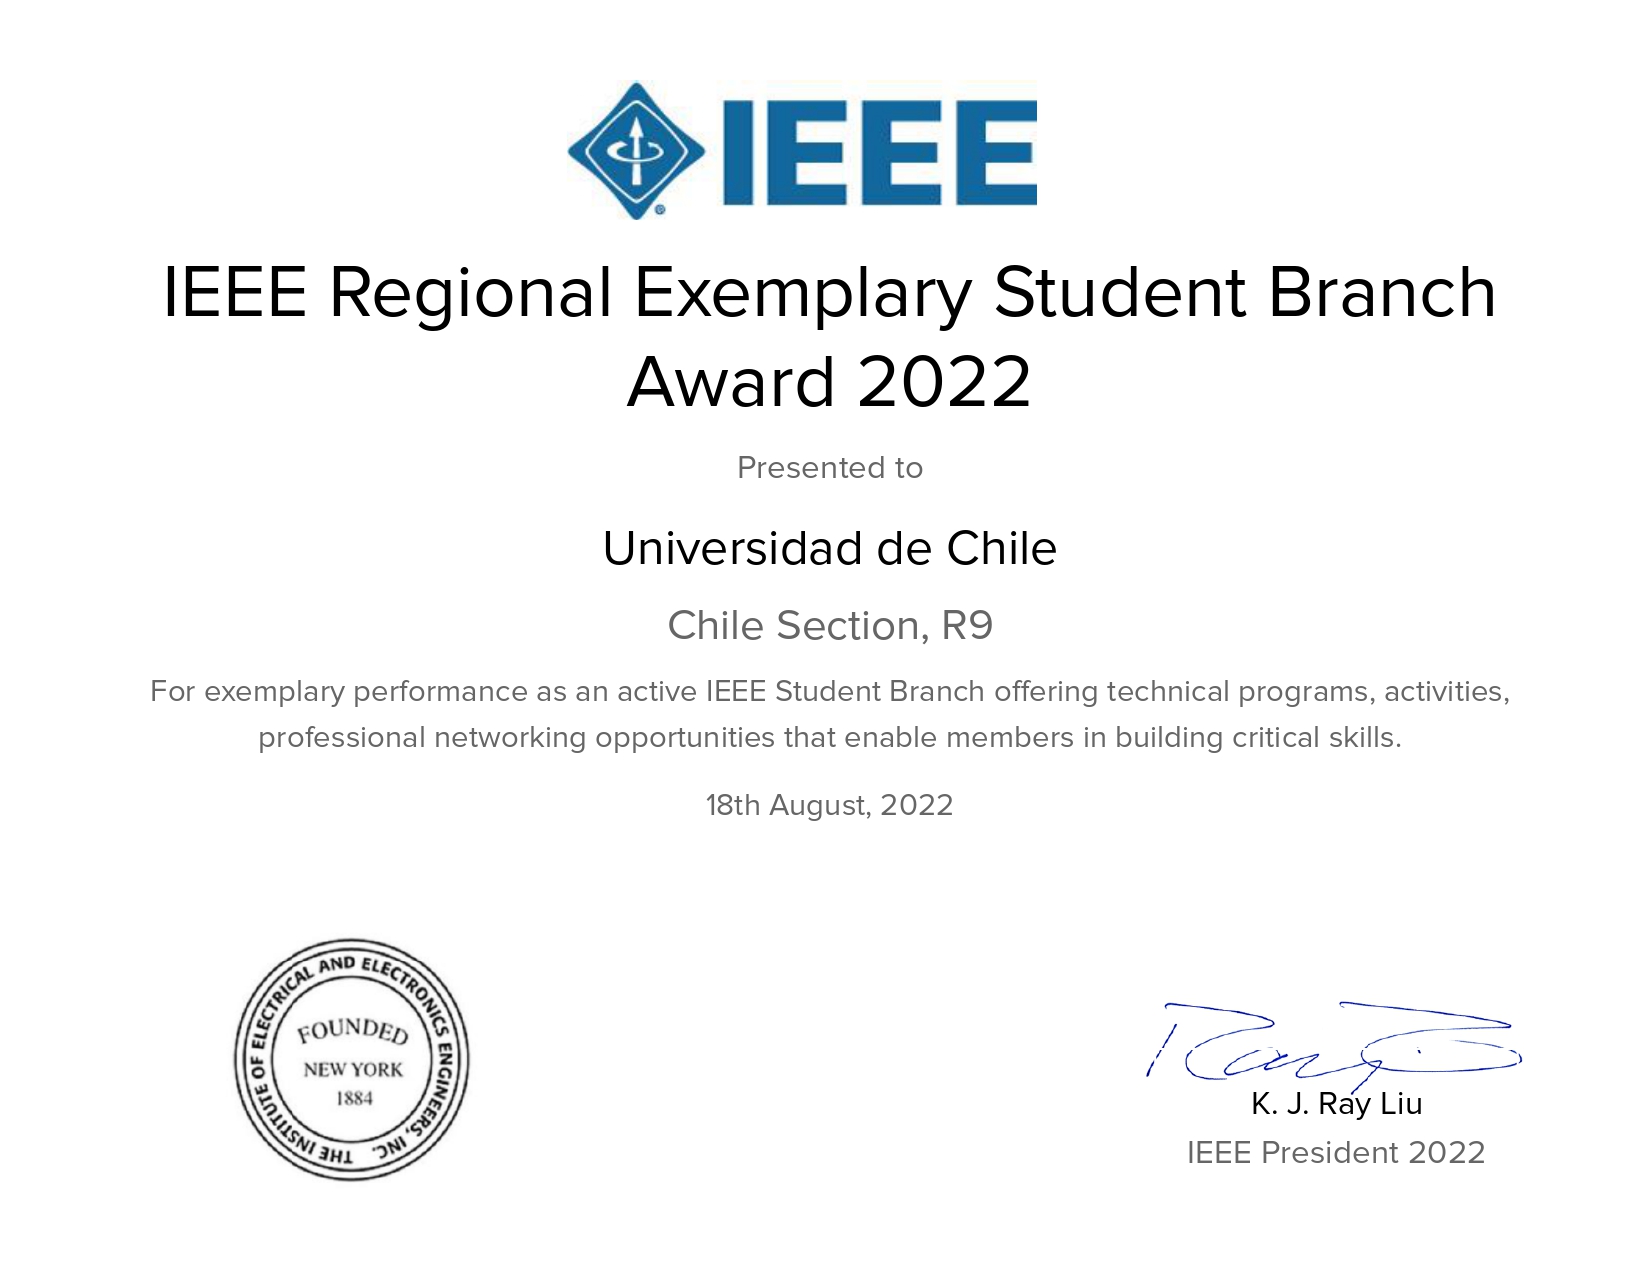 Un Reconocimiento A Los Integrantes De  La Rama Estudiantil IEEE De La Universidad De Chile.